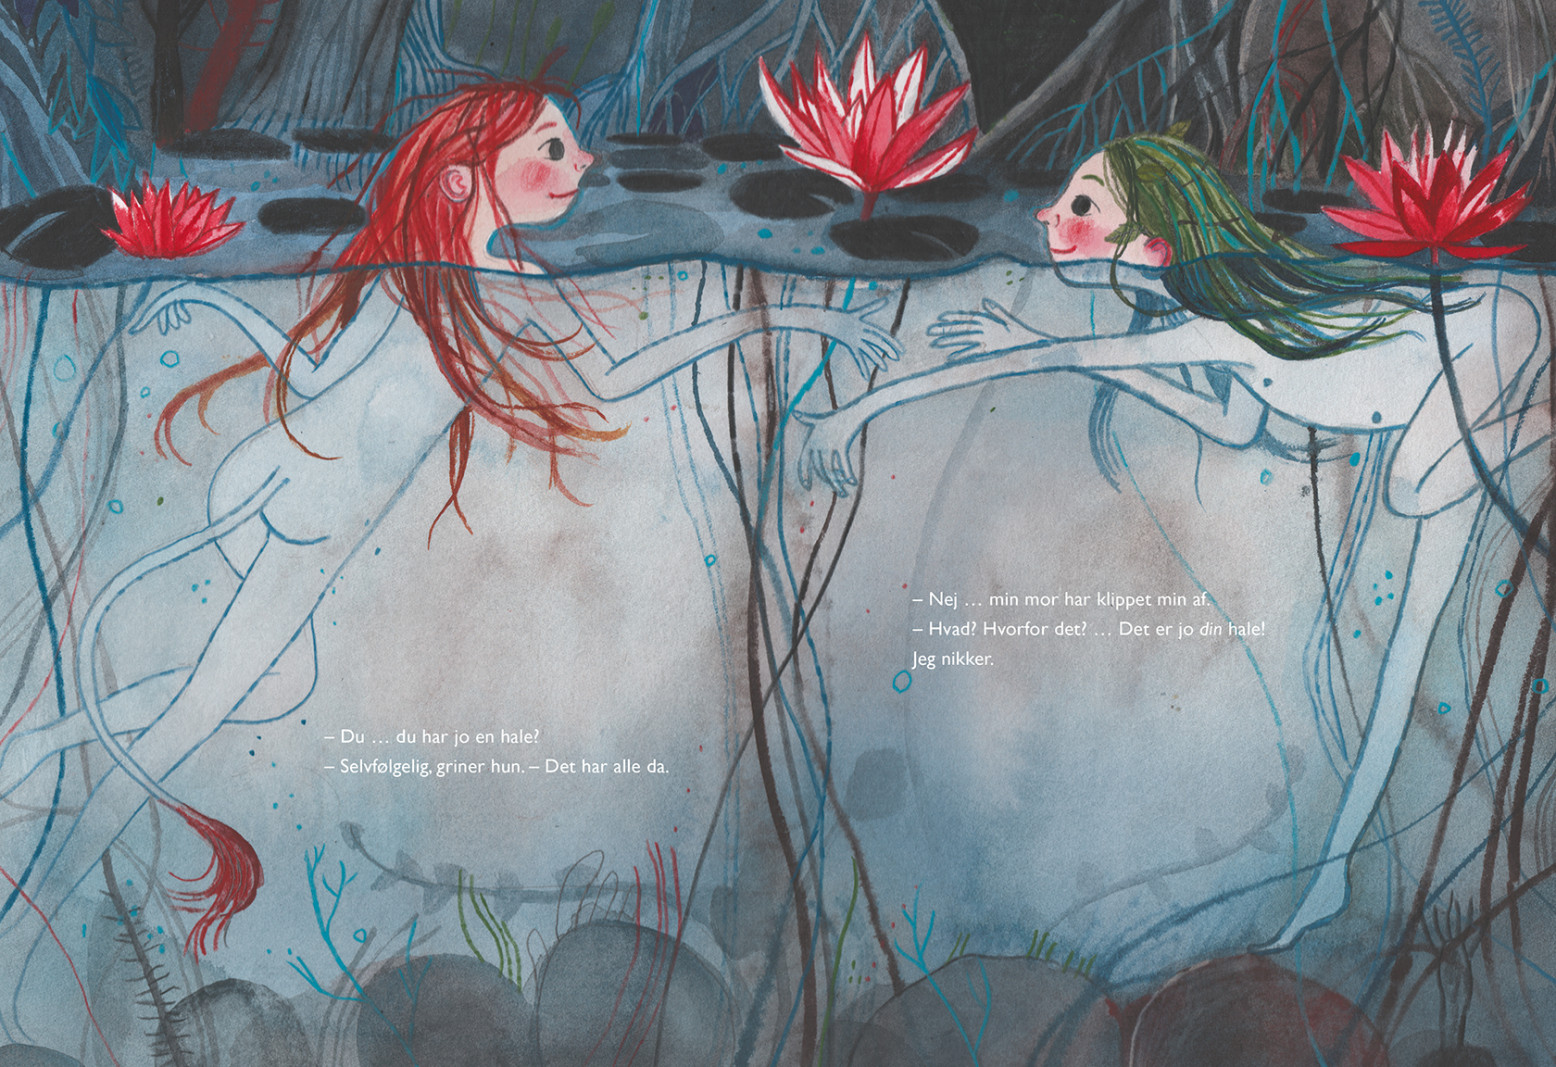 Forfatter Lilja Scherfig voksede op i et politisk hjem, hvor børn ikke måtte græde</br>Fra bogen 'Min hale'</br>Foto: Illustration af 'Signe Kjær'